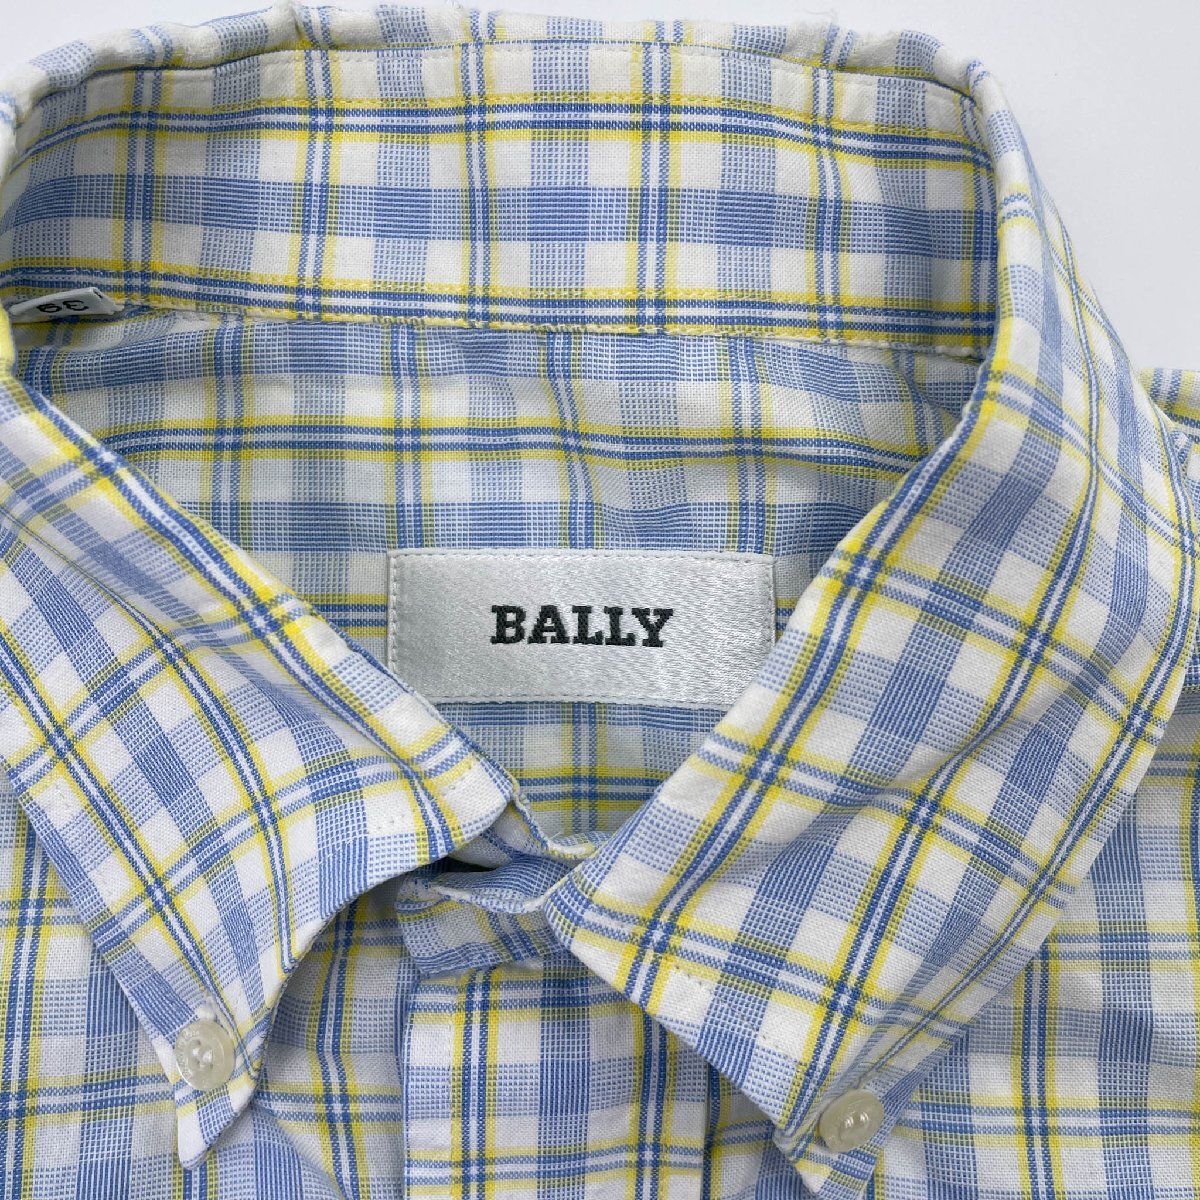 BALLY バリー チェック柄 半袖 シャツ サイズ 39/メンズ/紳士/ブルー イエロー 系_画像4